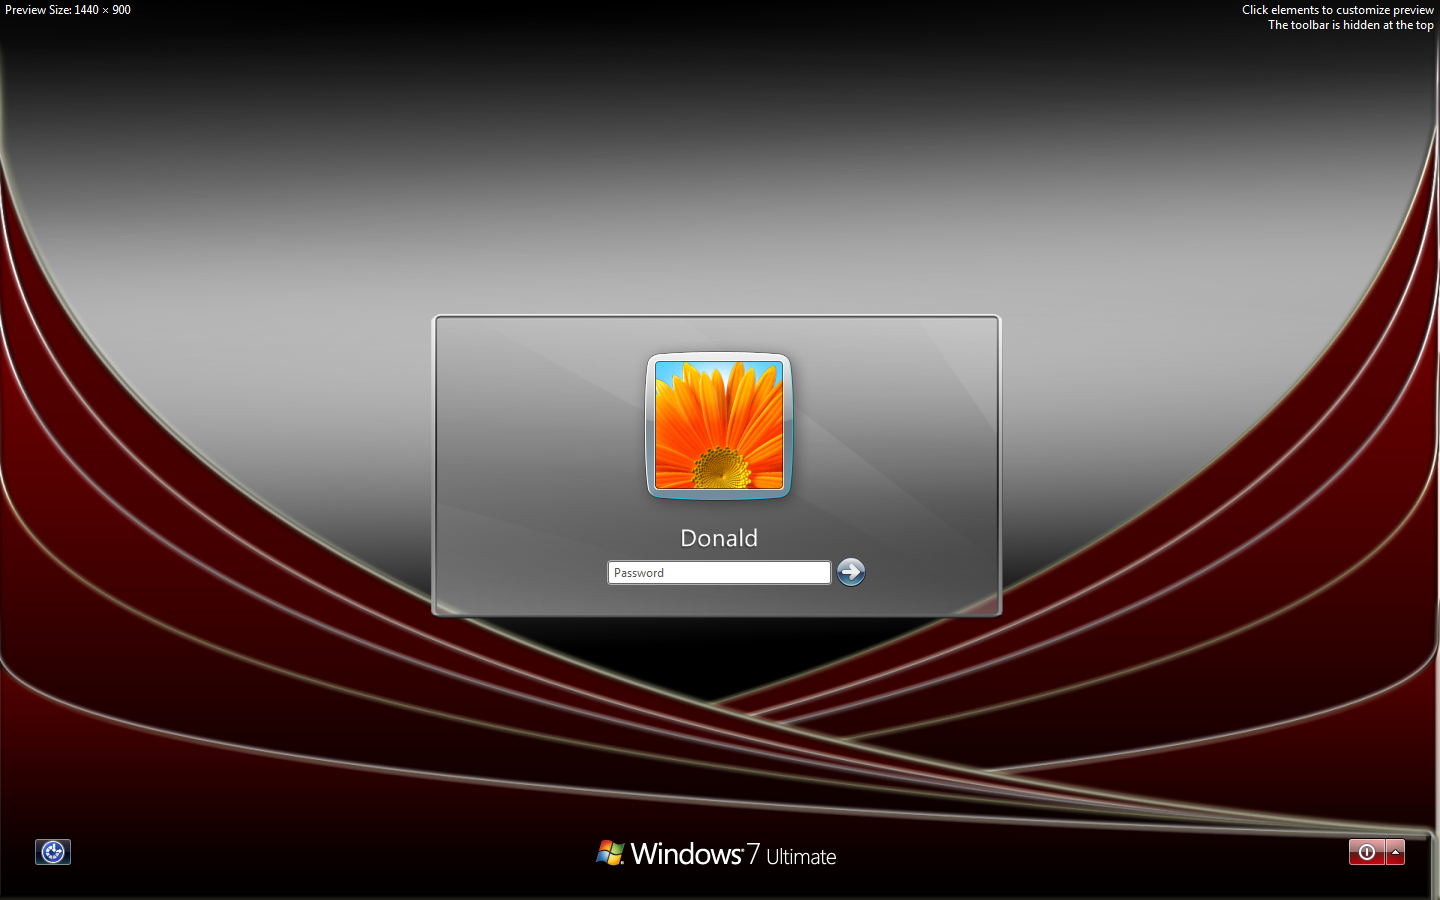 Windows 7 logon screen by ducky108 on DeviantArt